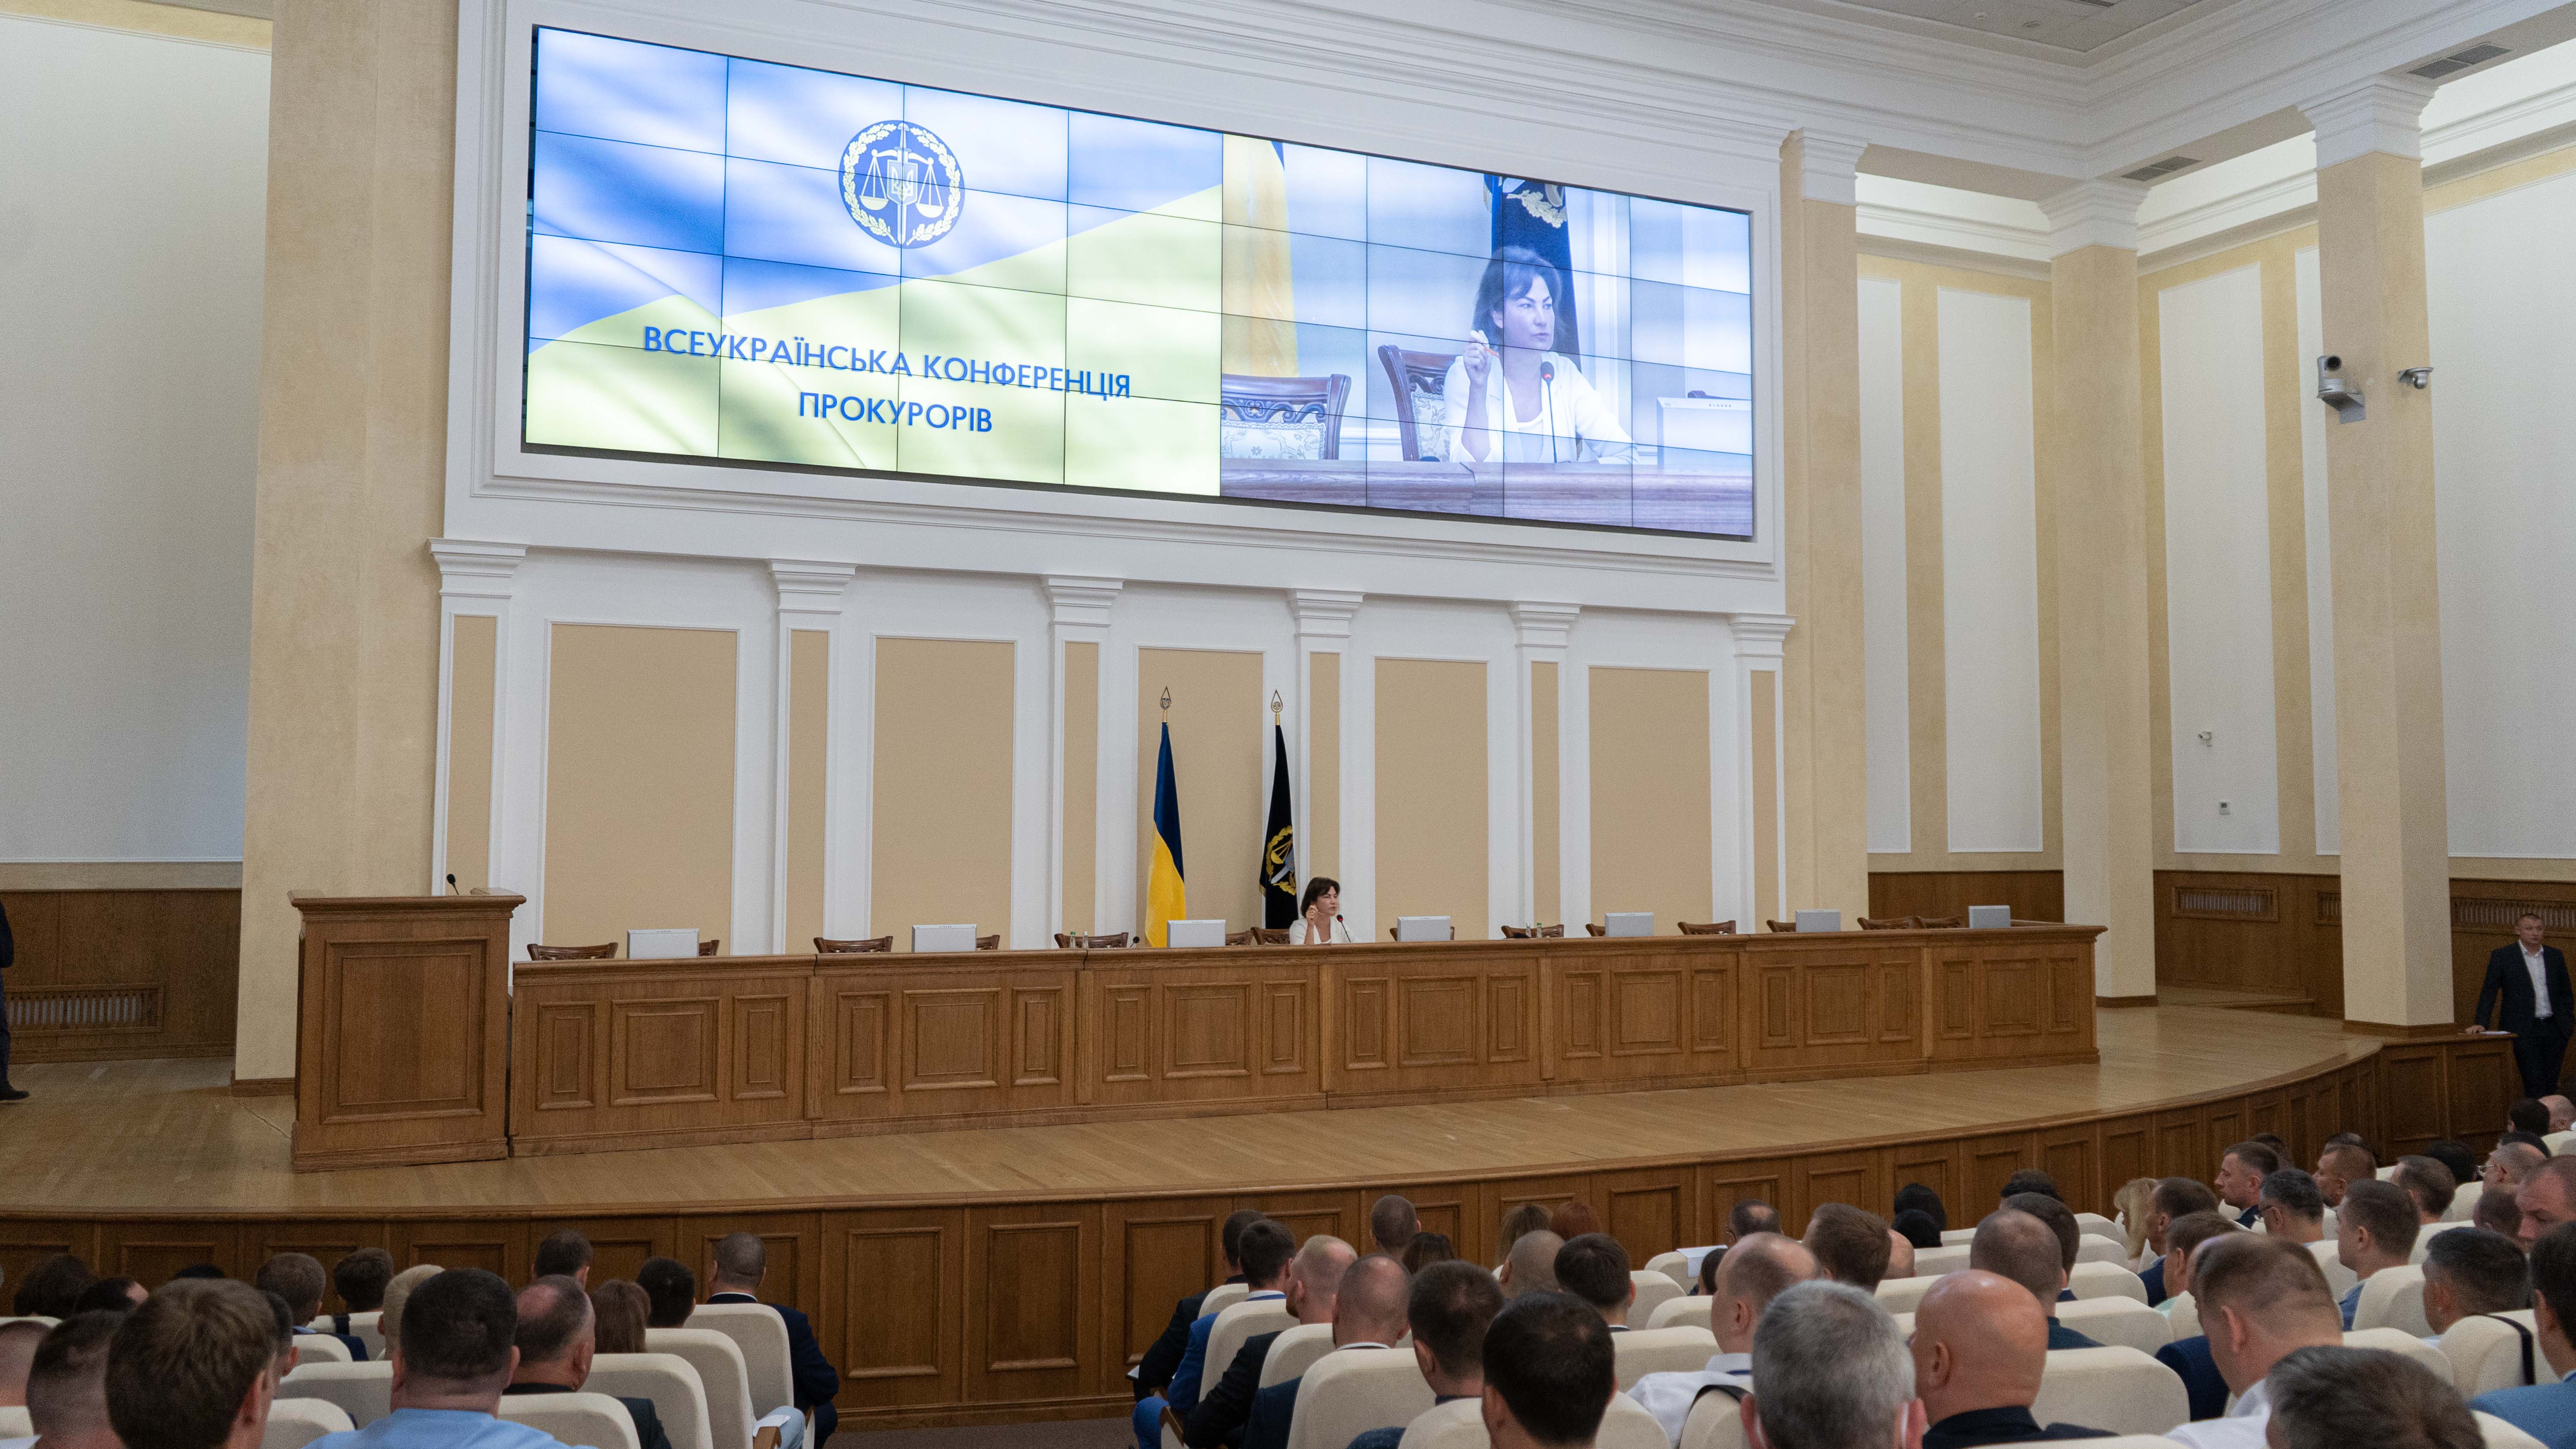 Всеукраїнська конференція прокурорів призначила членів Ради прокурорів України та відповідного органу, що здійснює дисциплінарне провадження (ФОТО)